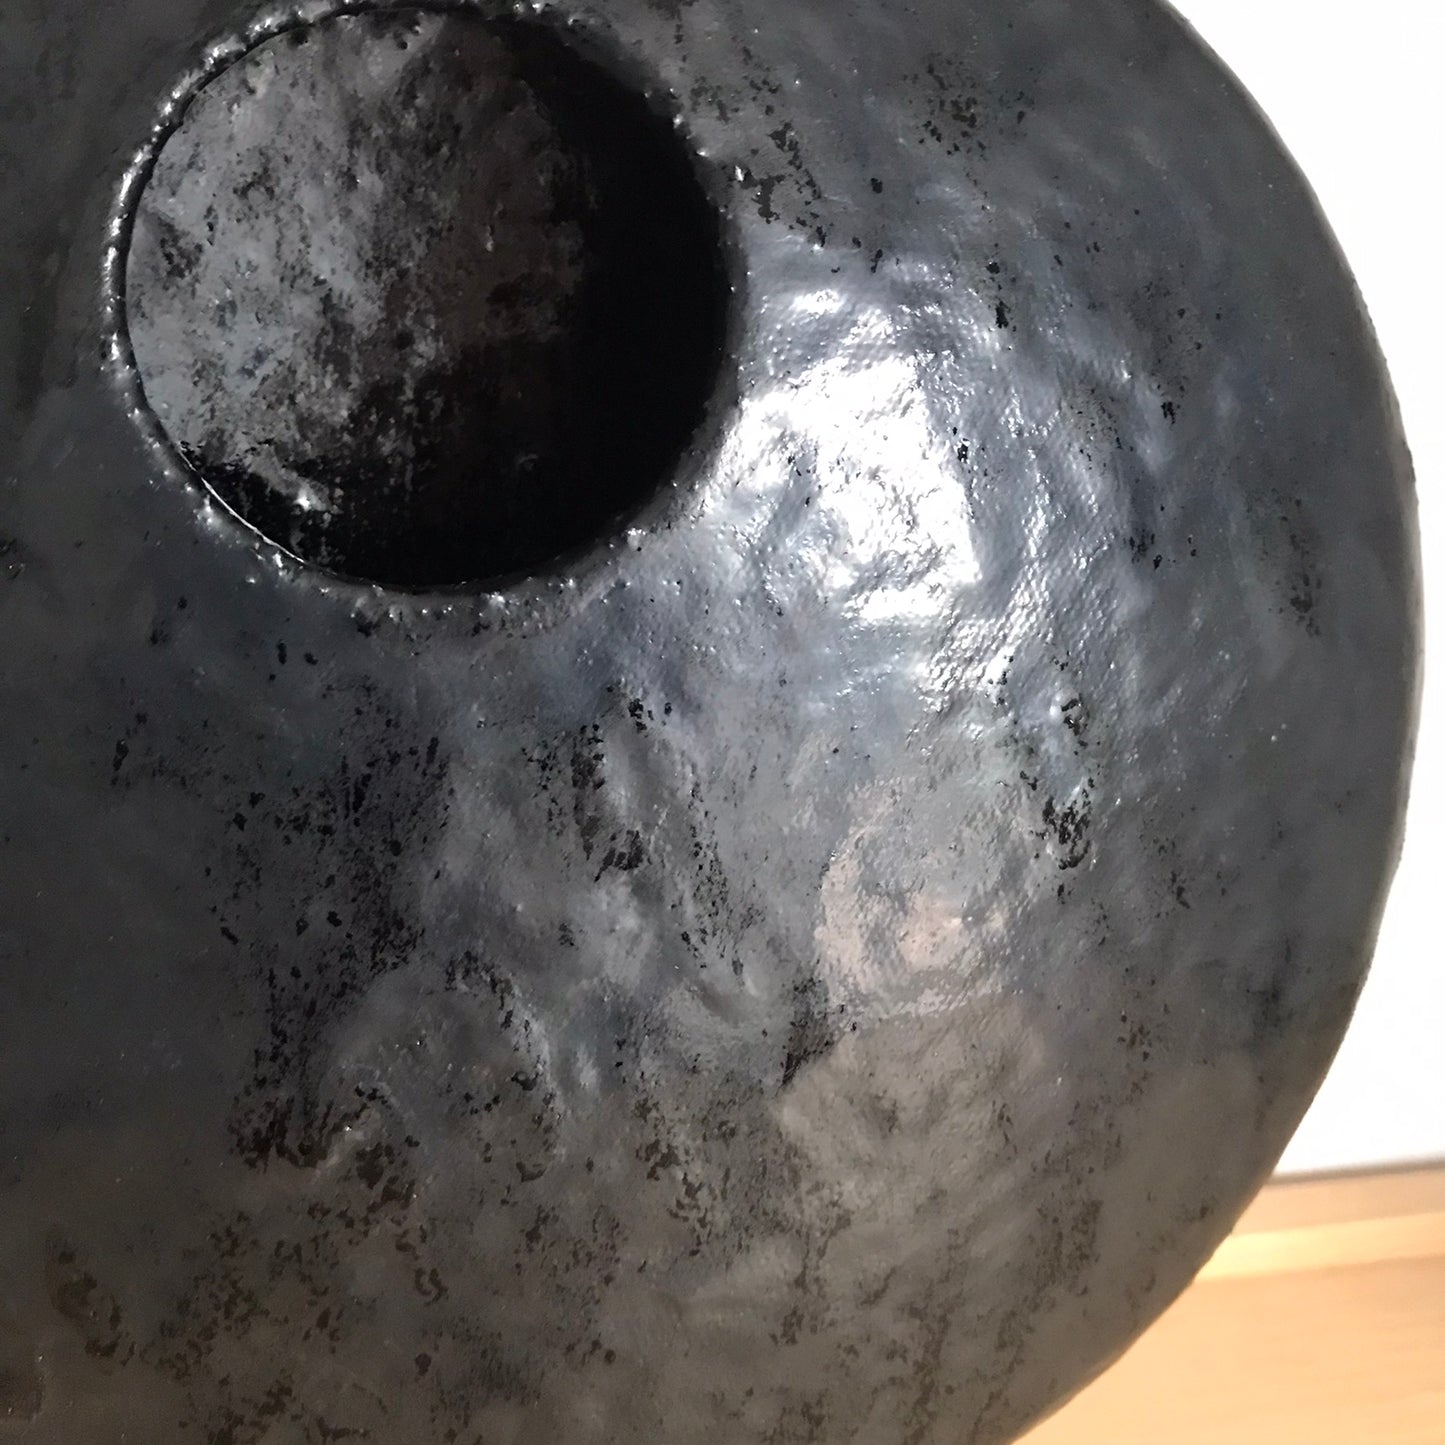 Vase Black Moon